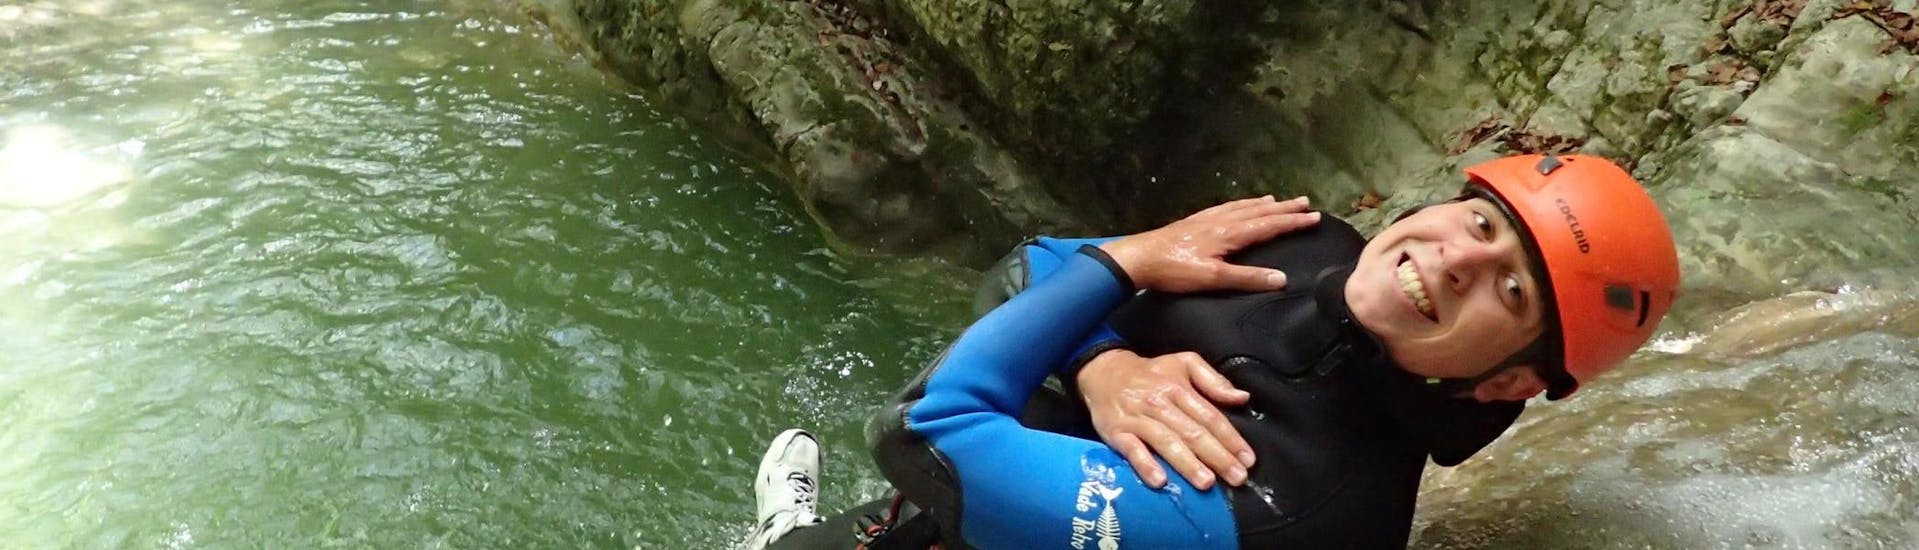 Uno de los participantes del barranquismo de descubrimiento en el cañón d'Angon, de Térreo Canyoning, se desliza por un tobogán de agua natural.